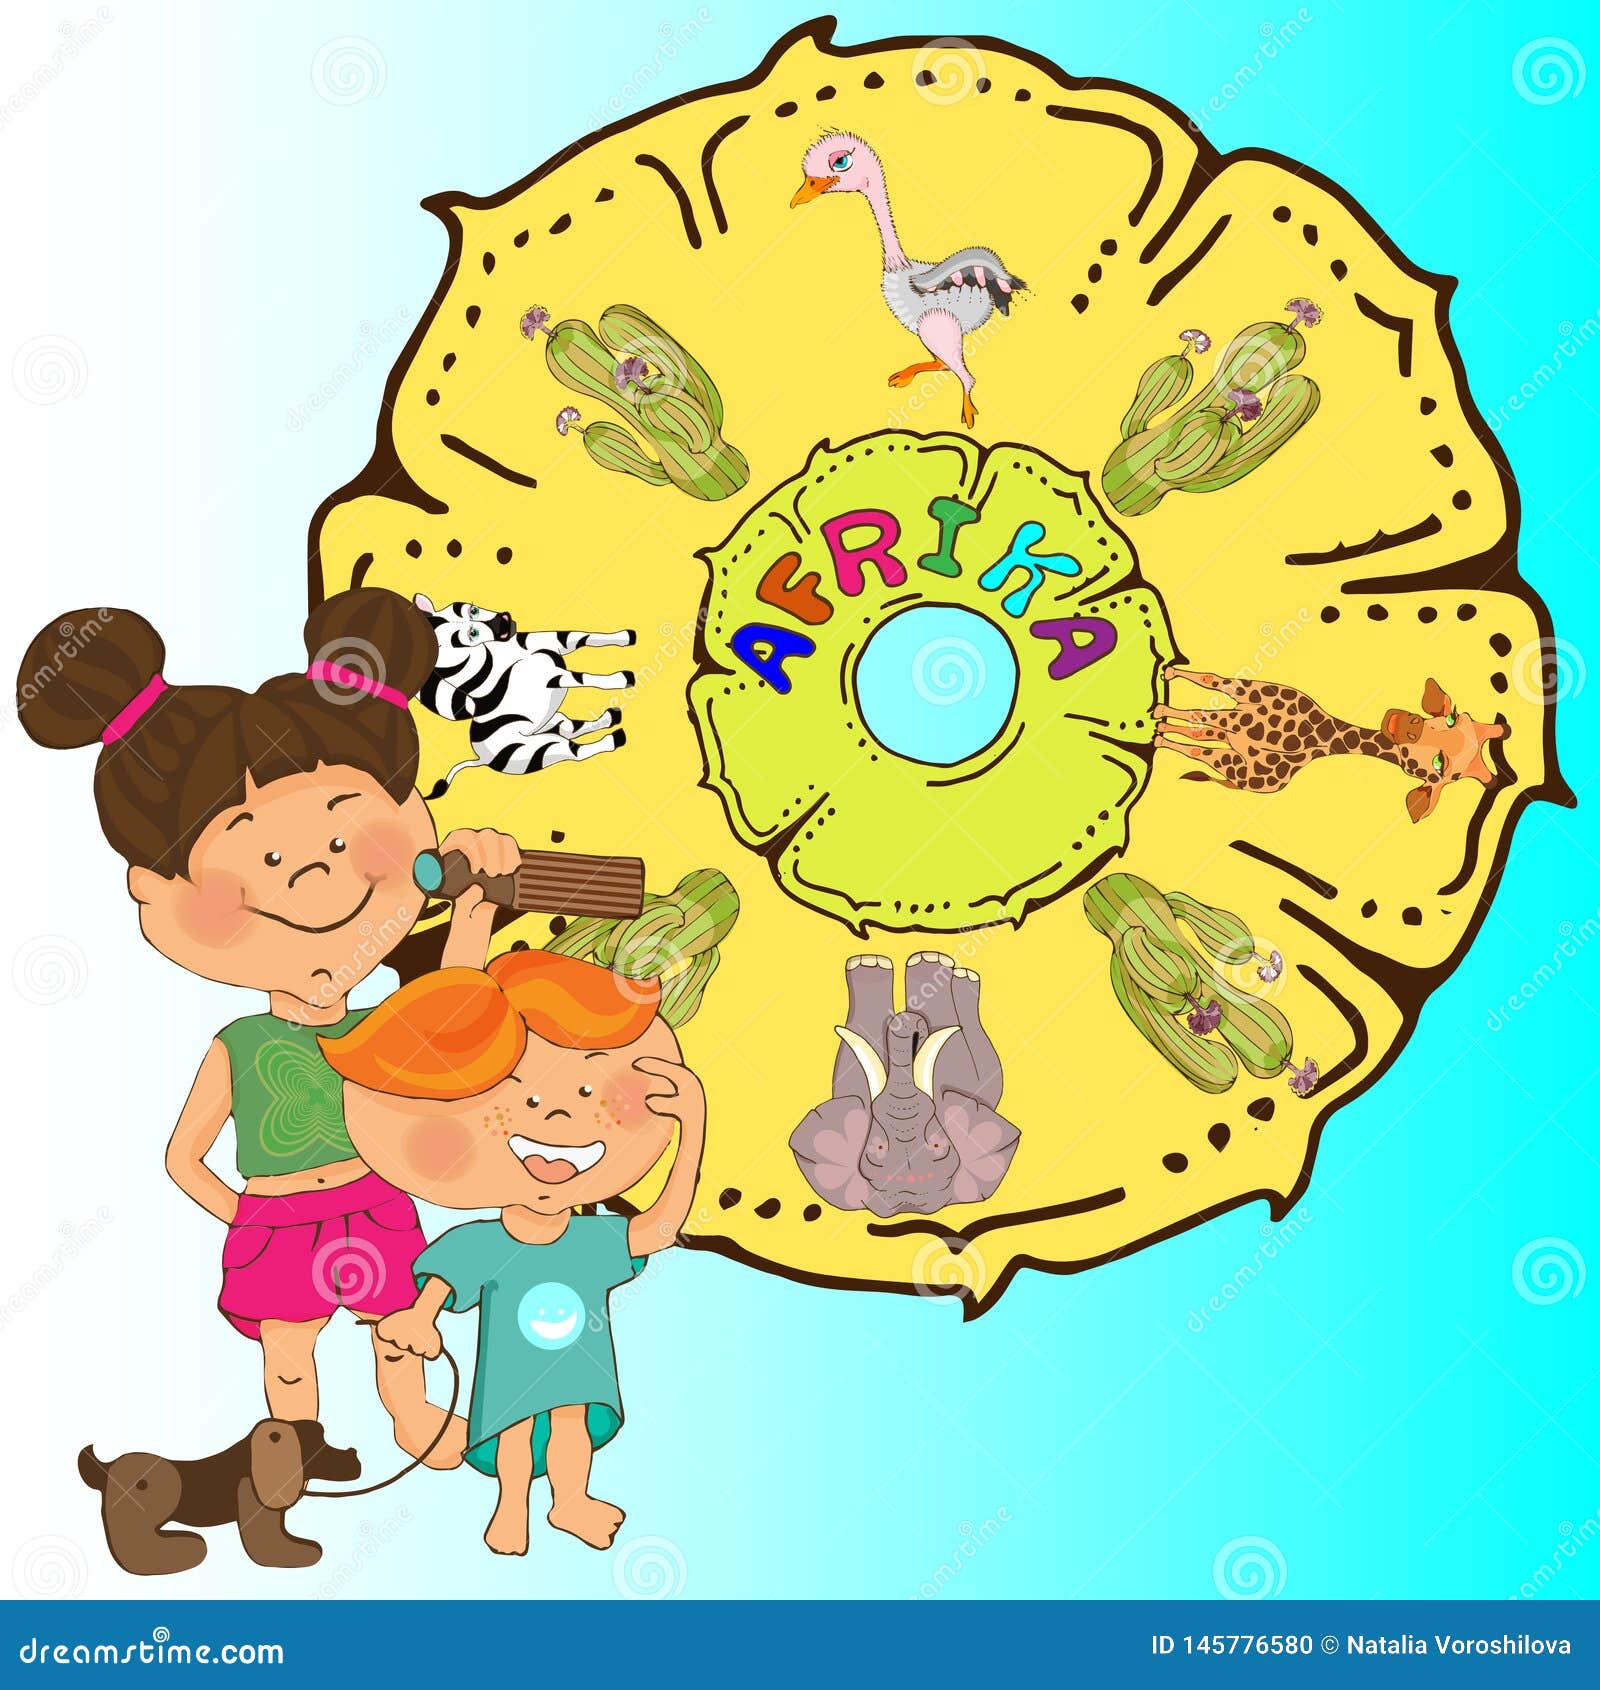 Kindergarten Cartoon Stock Images - Download 765 Royalty ...